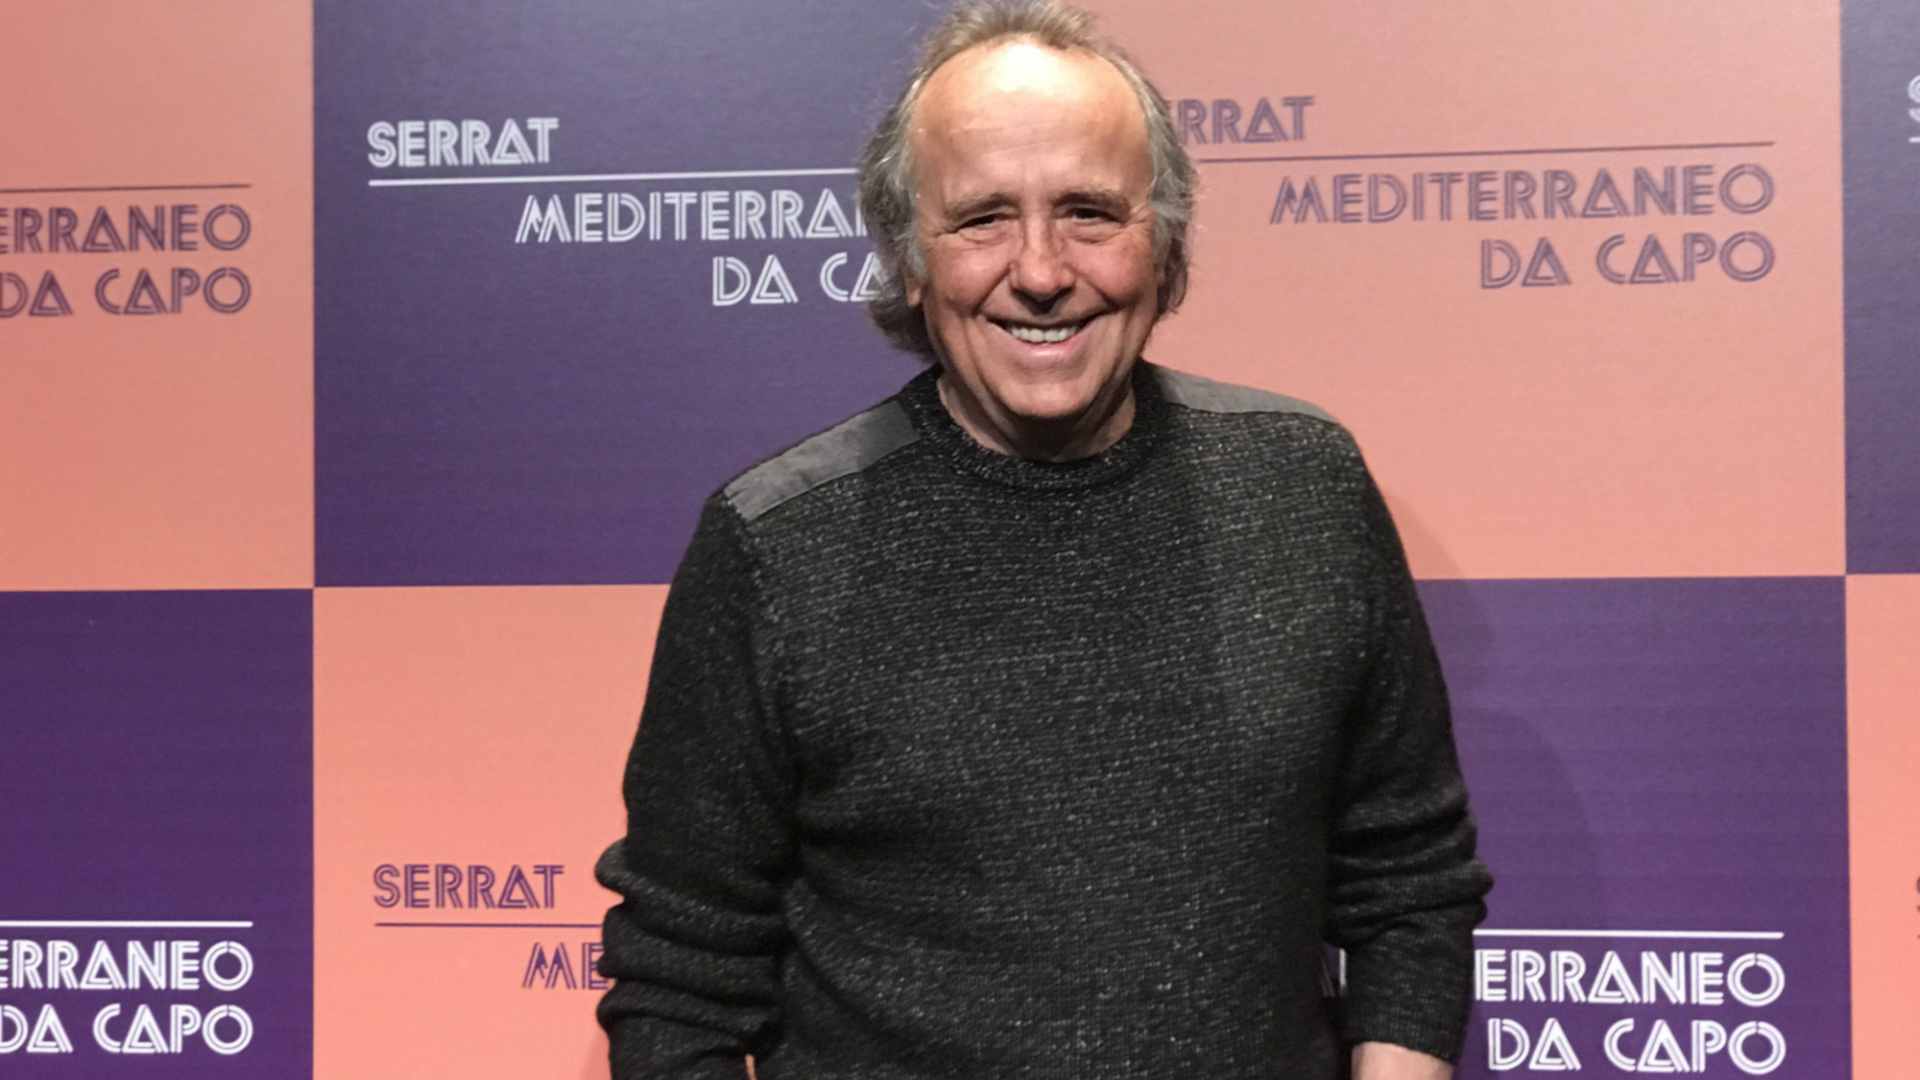 Serrat vuelve a sus orígenes con 'Mediterráneo da capo'